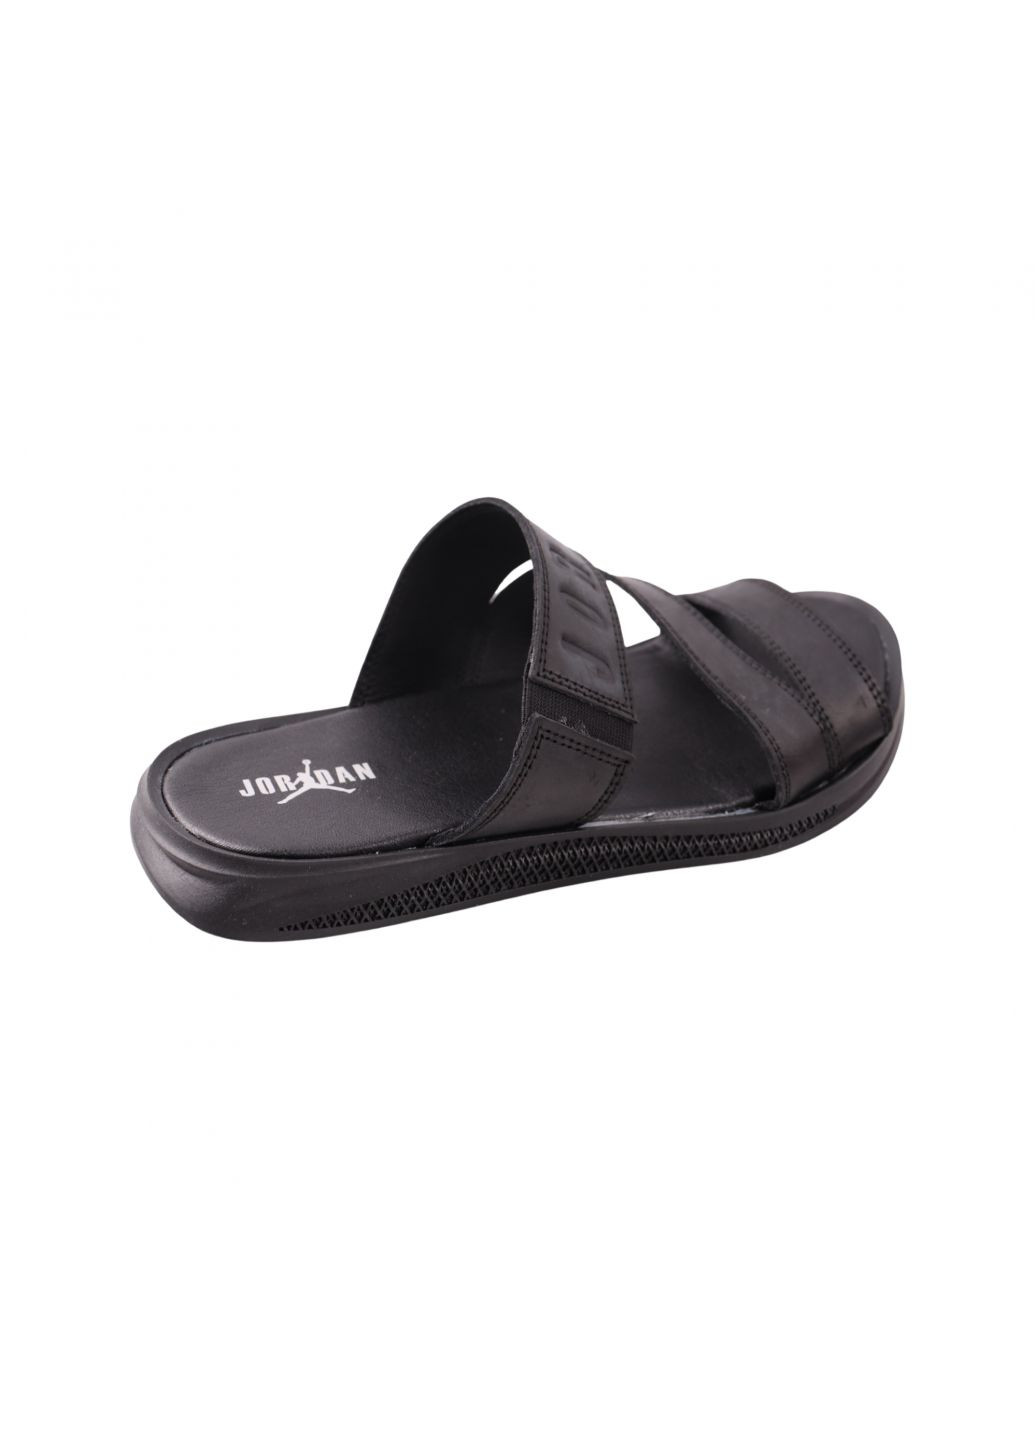 Шльопанці чоловічі чорні натуральна шкіра Maxus Shoes 133-23lshc (259112673)